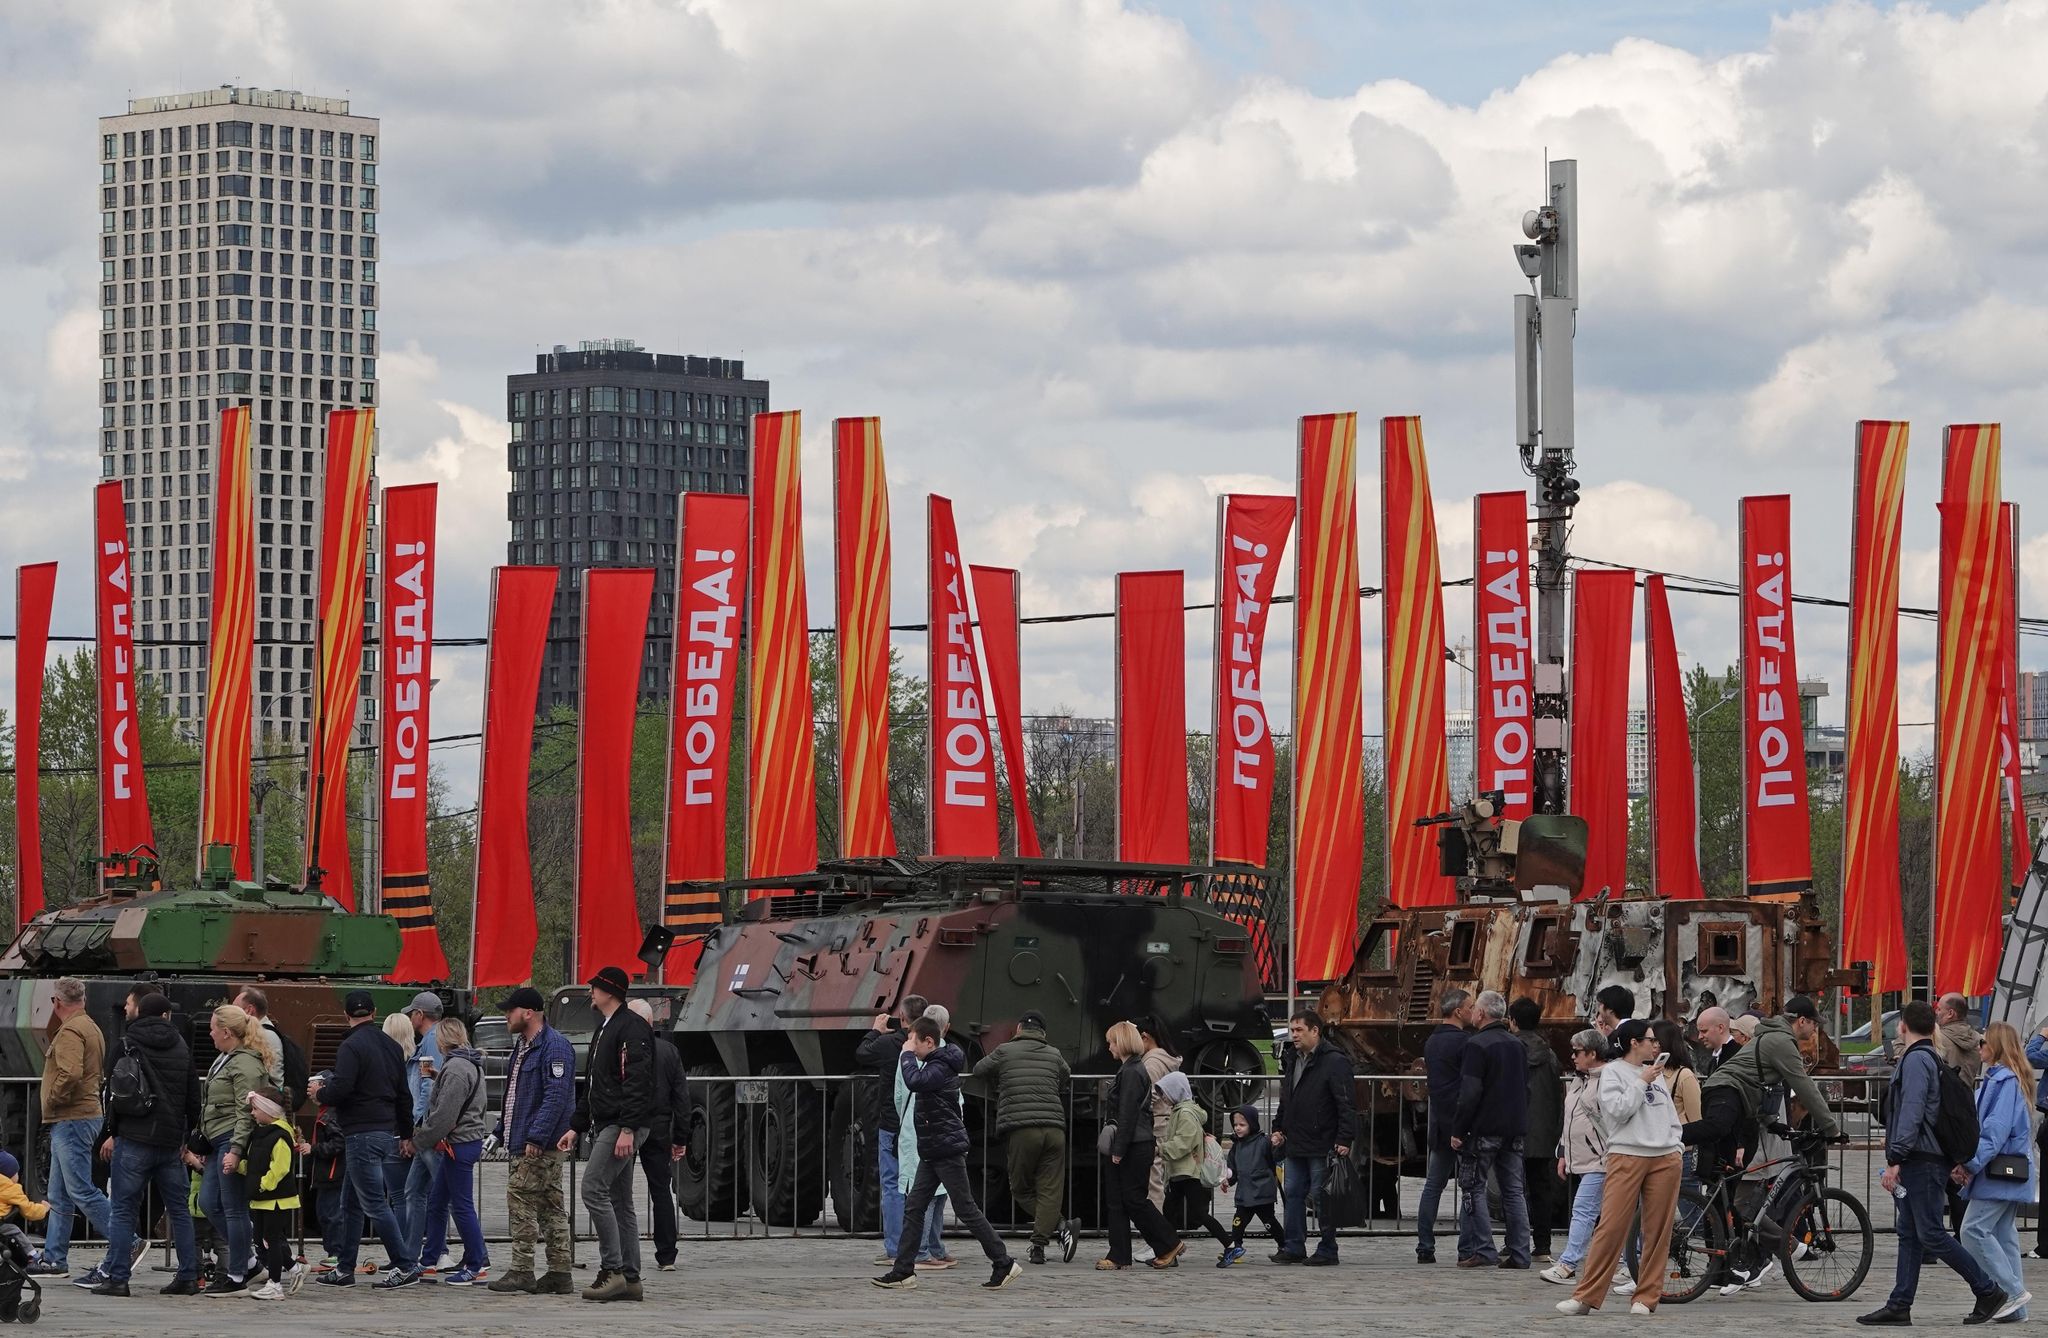 Menschen besichtigen eine Schau zu Kriegstrophäen im Park Pobedy (Park des Sieges) in Moskau. Gezeigt wird Militärtechnik aus verschiedenen westlichen Ländern und der Ukraine. Im Hintergrund zu sehen sind rote Fahnen mit der Aufschrift Pobeda! (auf Deutsch: Sieg).